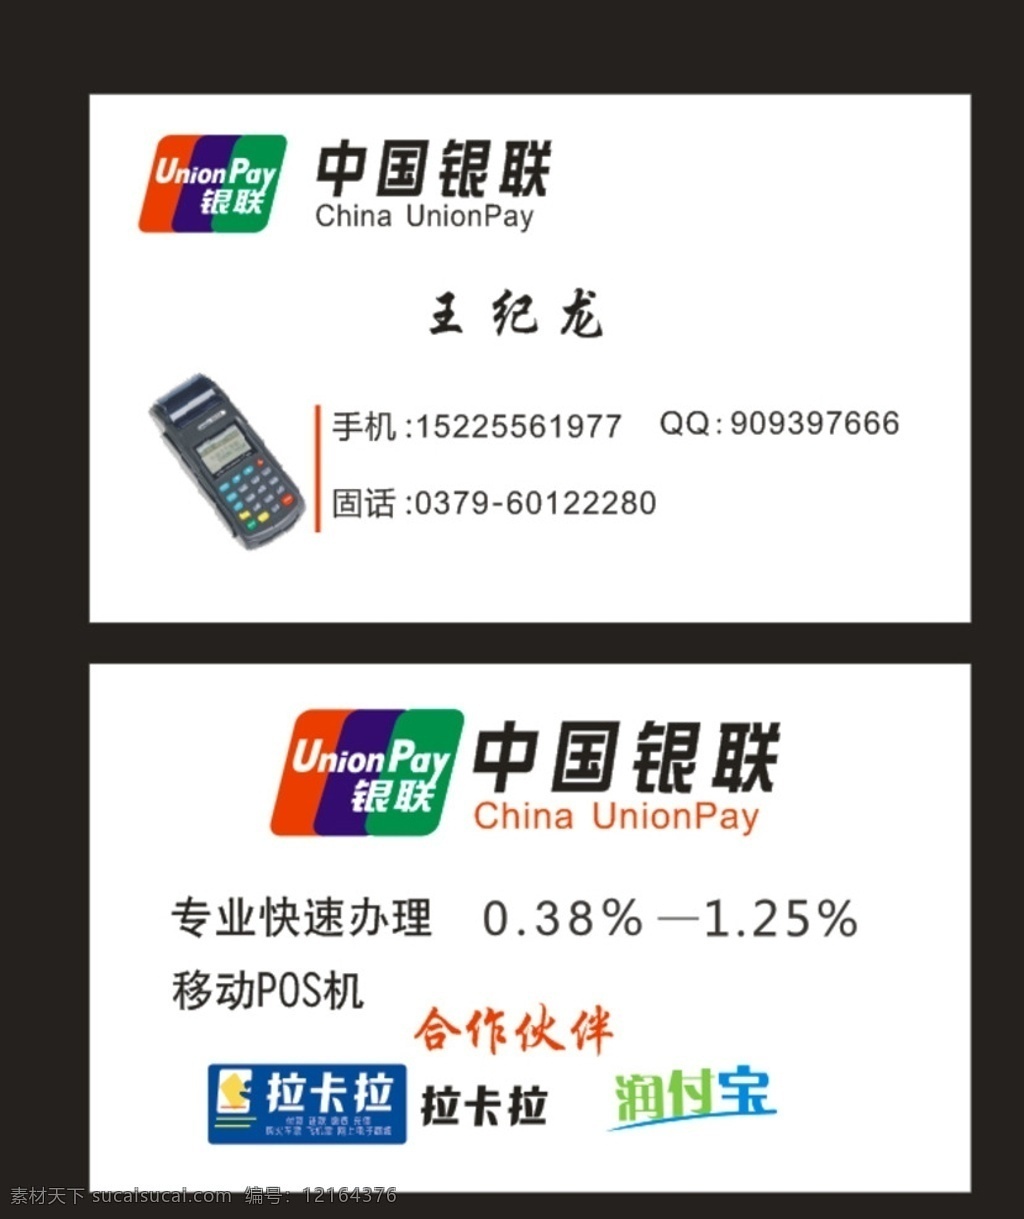 中国 银 联 经典 名片 银联名片 银行名片 pos机名片 卡片 经典卡片 会员卡 名片设计模板 名片卡片